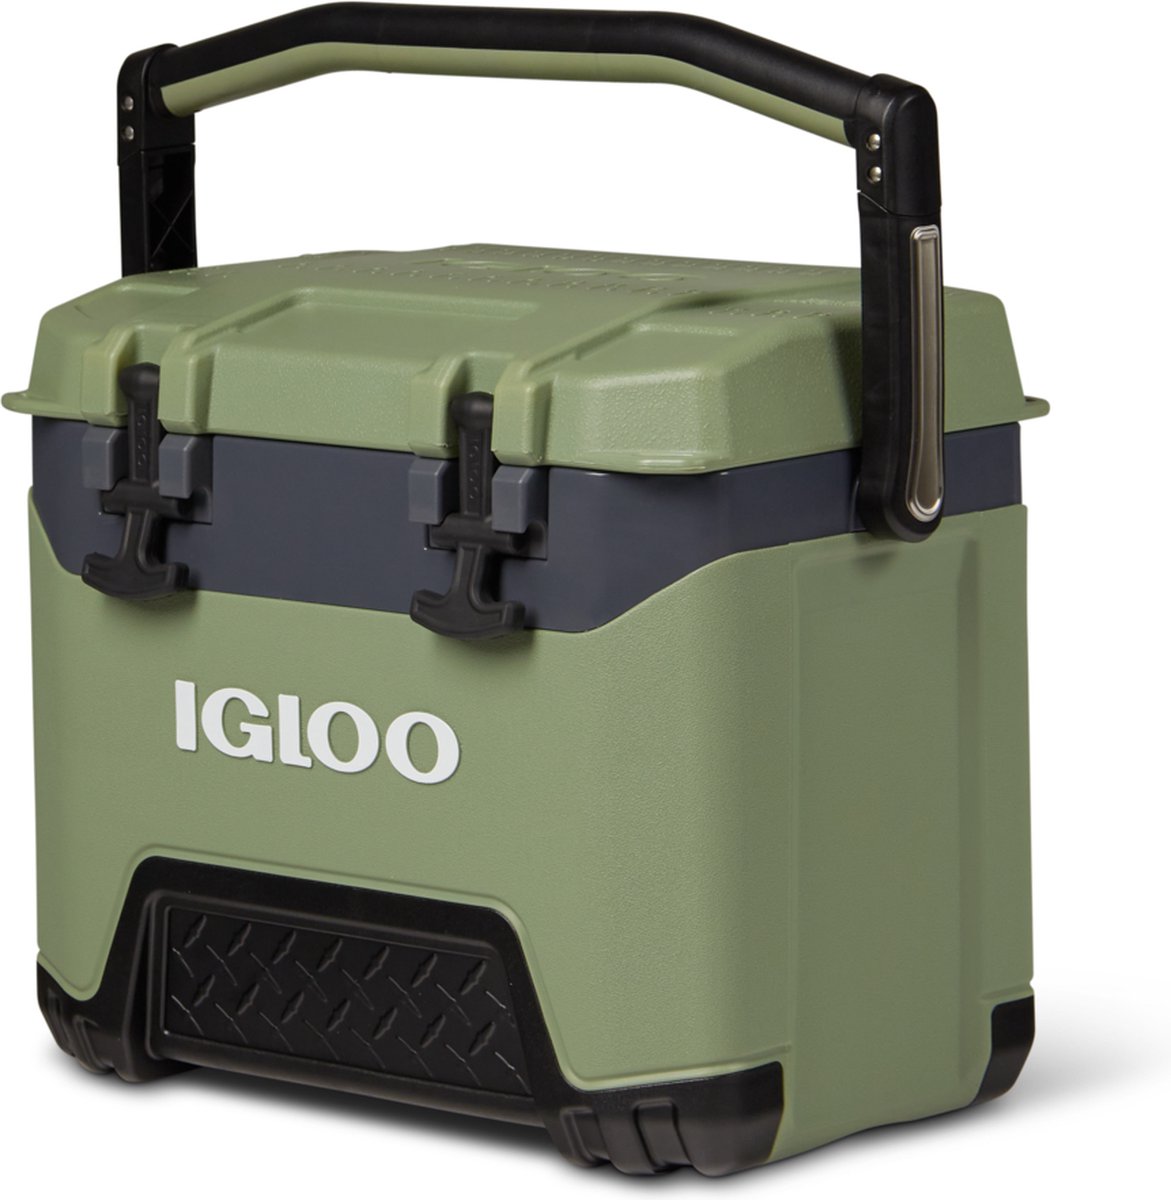 Igloo BMX 25 - Middelgrote koelbox speciaal voor op de bouw - 23 Liter - Groen